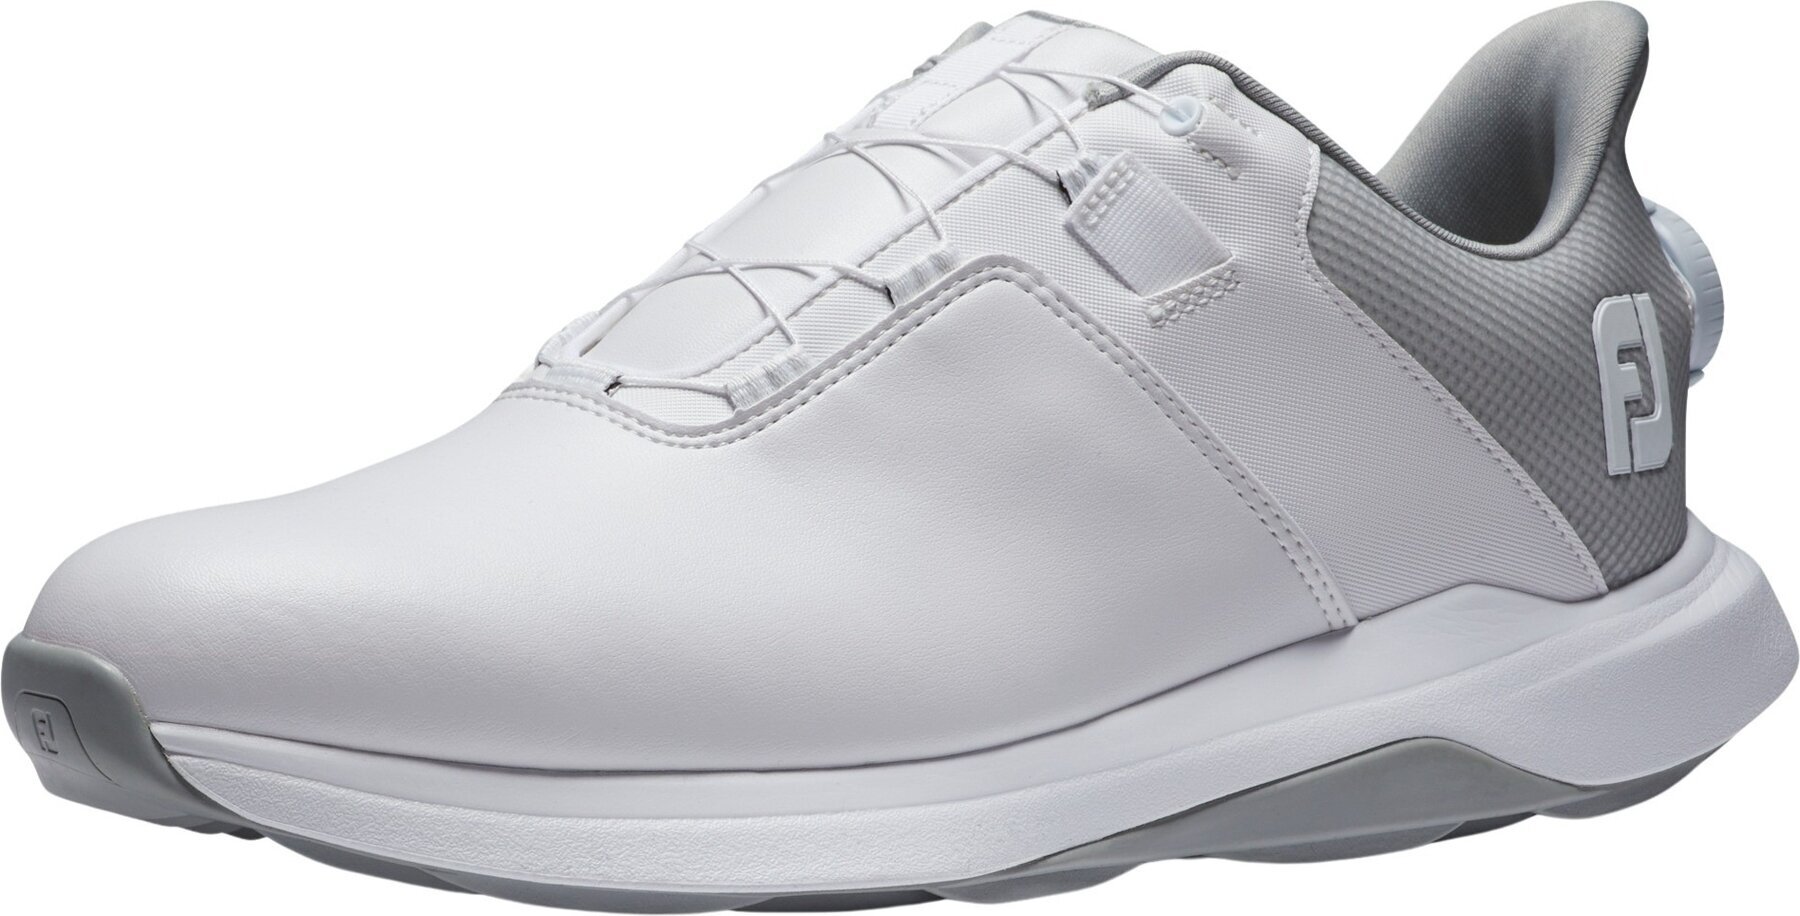 Chaussures de golf pour hommes Footjoy ProLite Mens Golf Shoes White/White/Grey 46